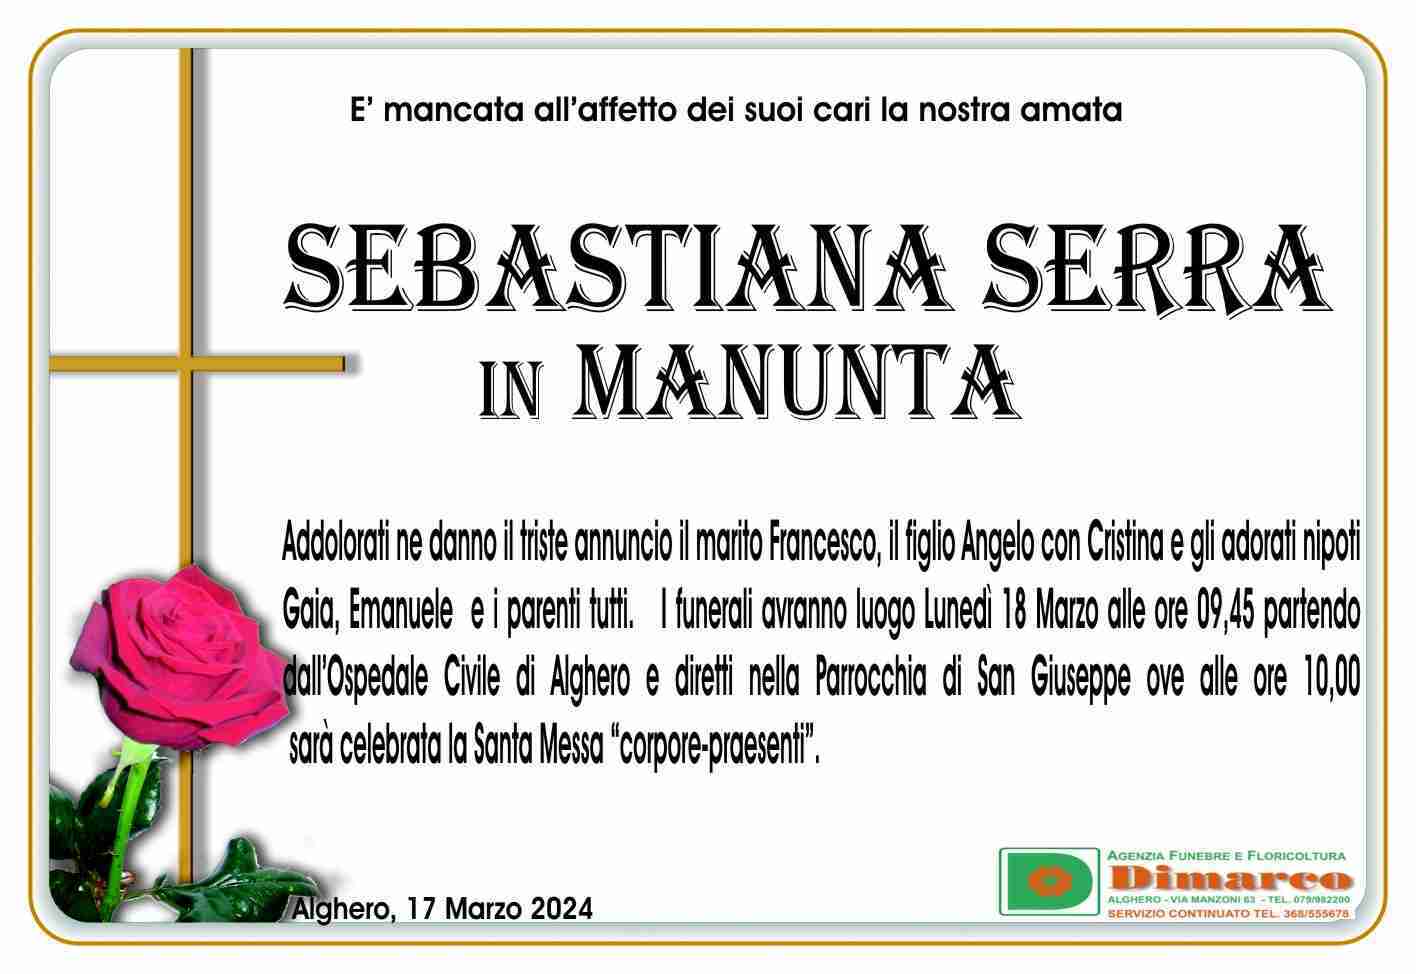 Sebastiana Serra in Manunata